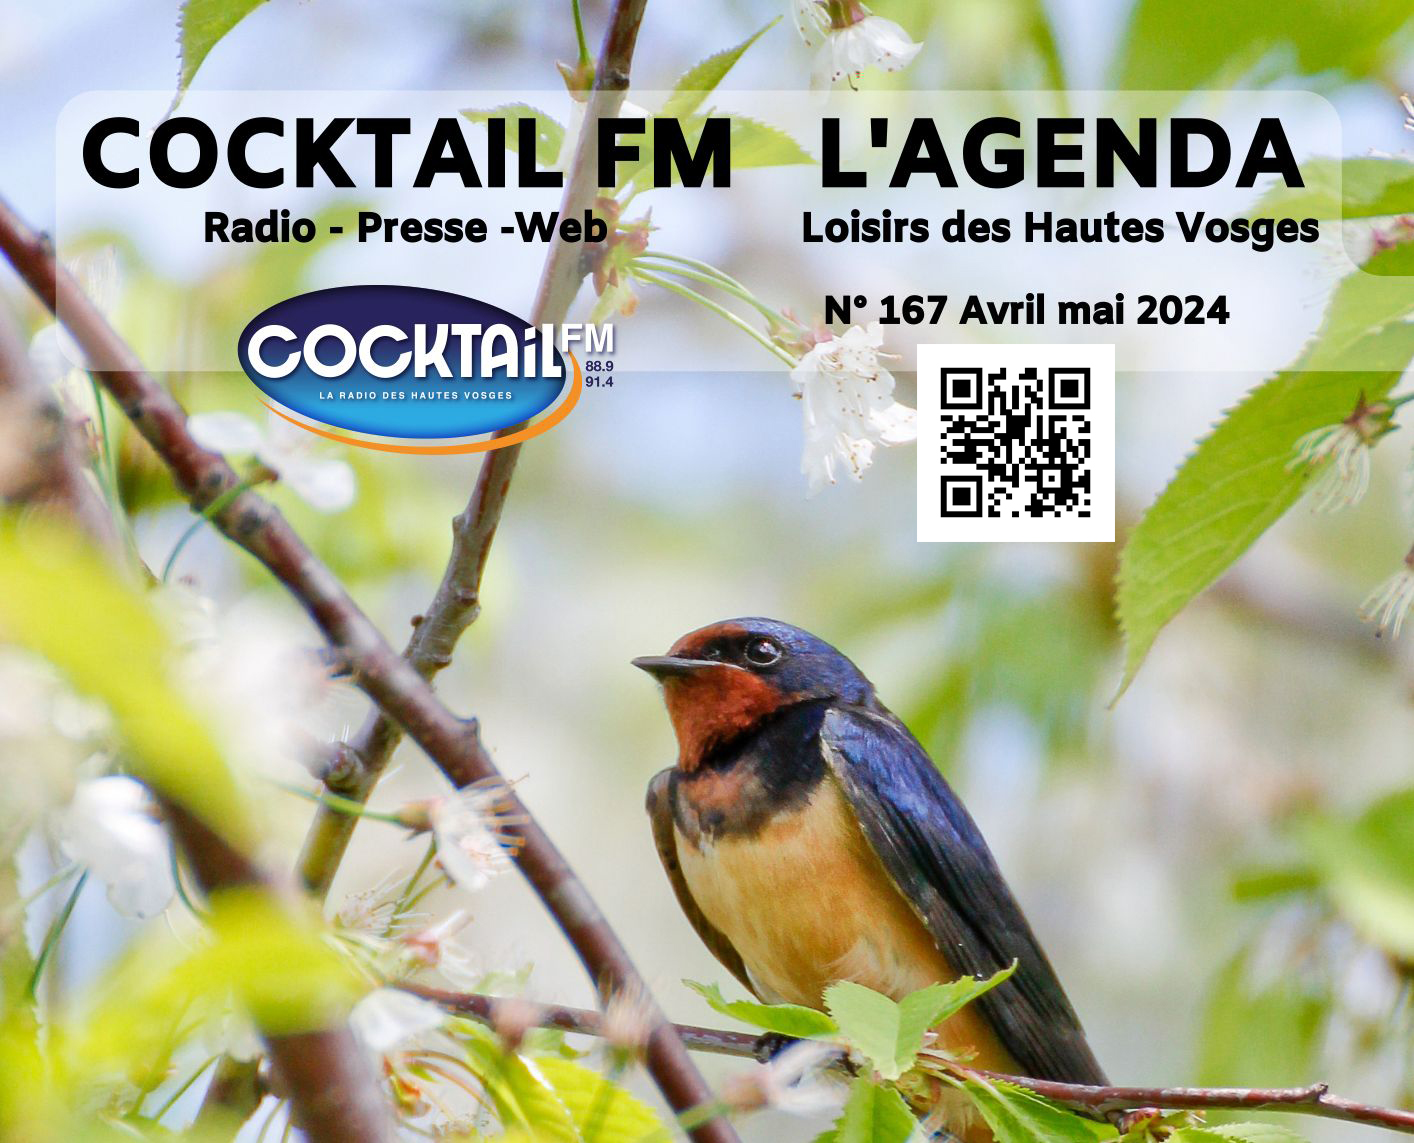 COCKTAIL FM L'AGENDA LOISIRS DES HAUTES VOSGES AVRIL - MAI 2024